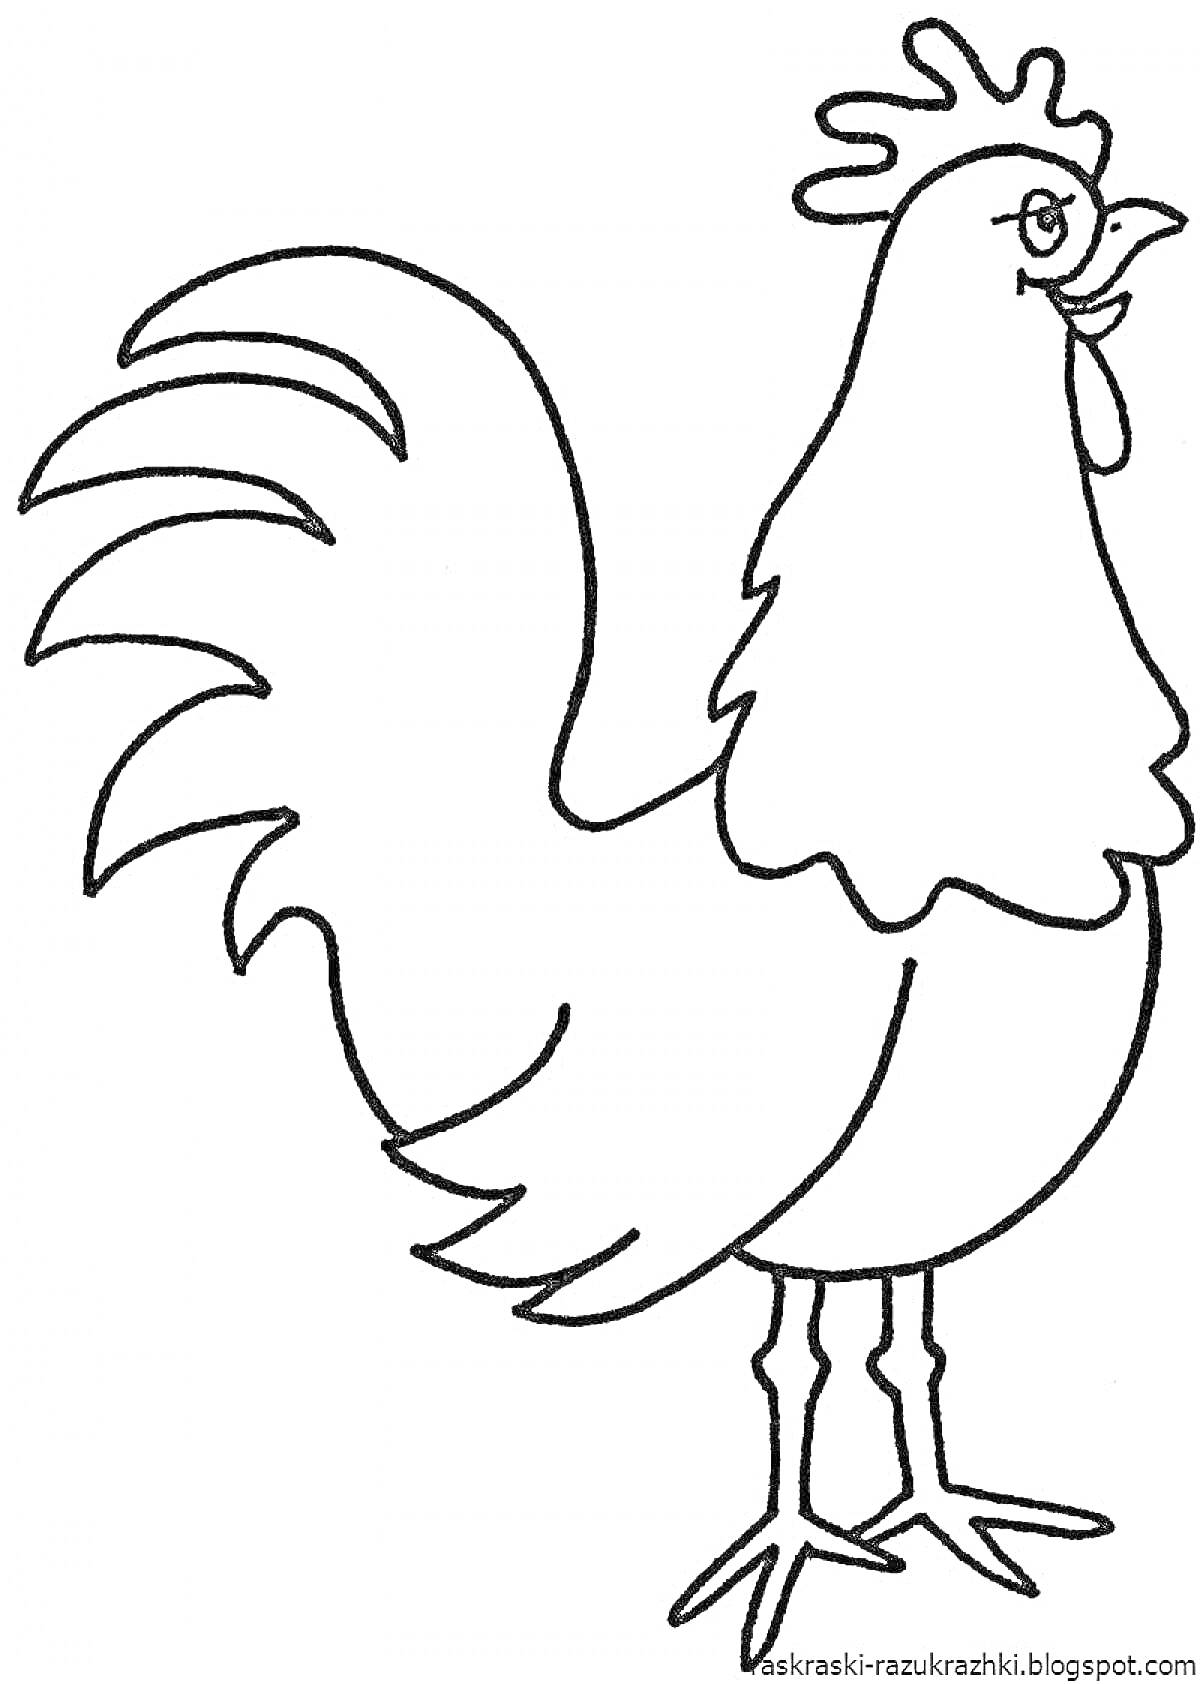 Раскраска Раскраска с петухом (петух, клюв, гребень, хвостовые перья, лапы)